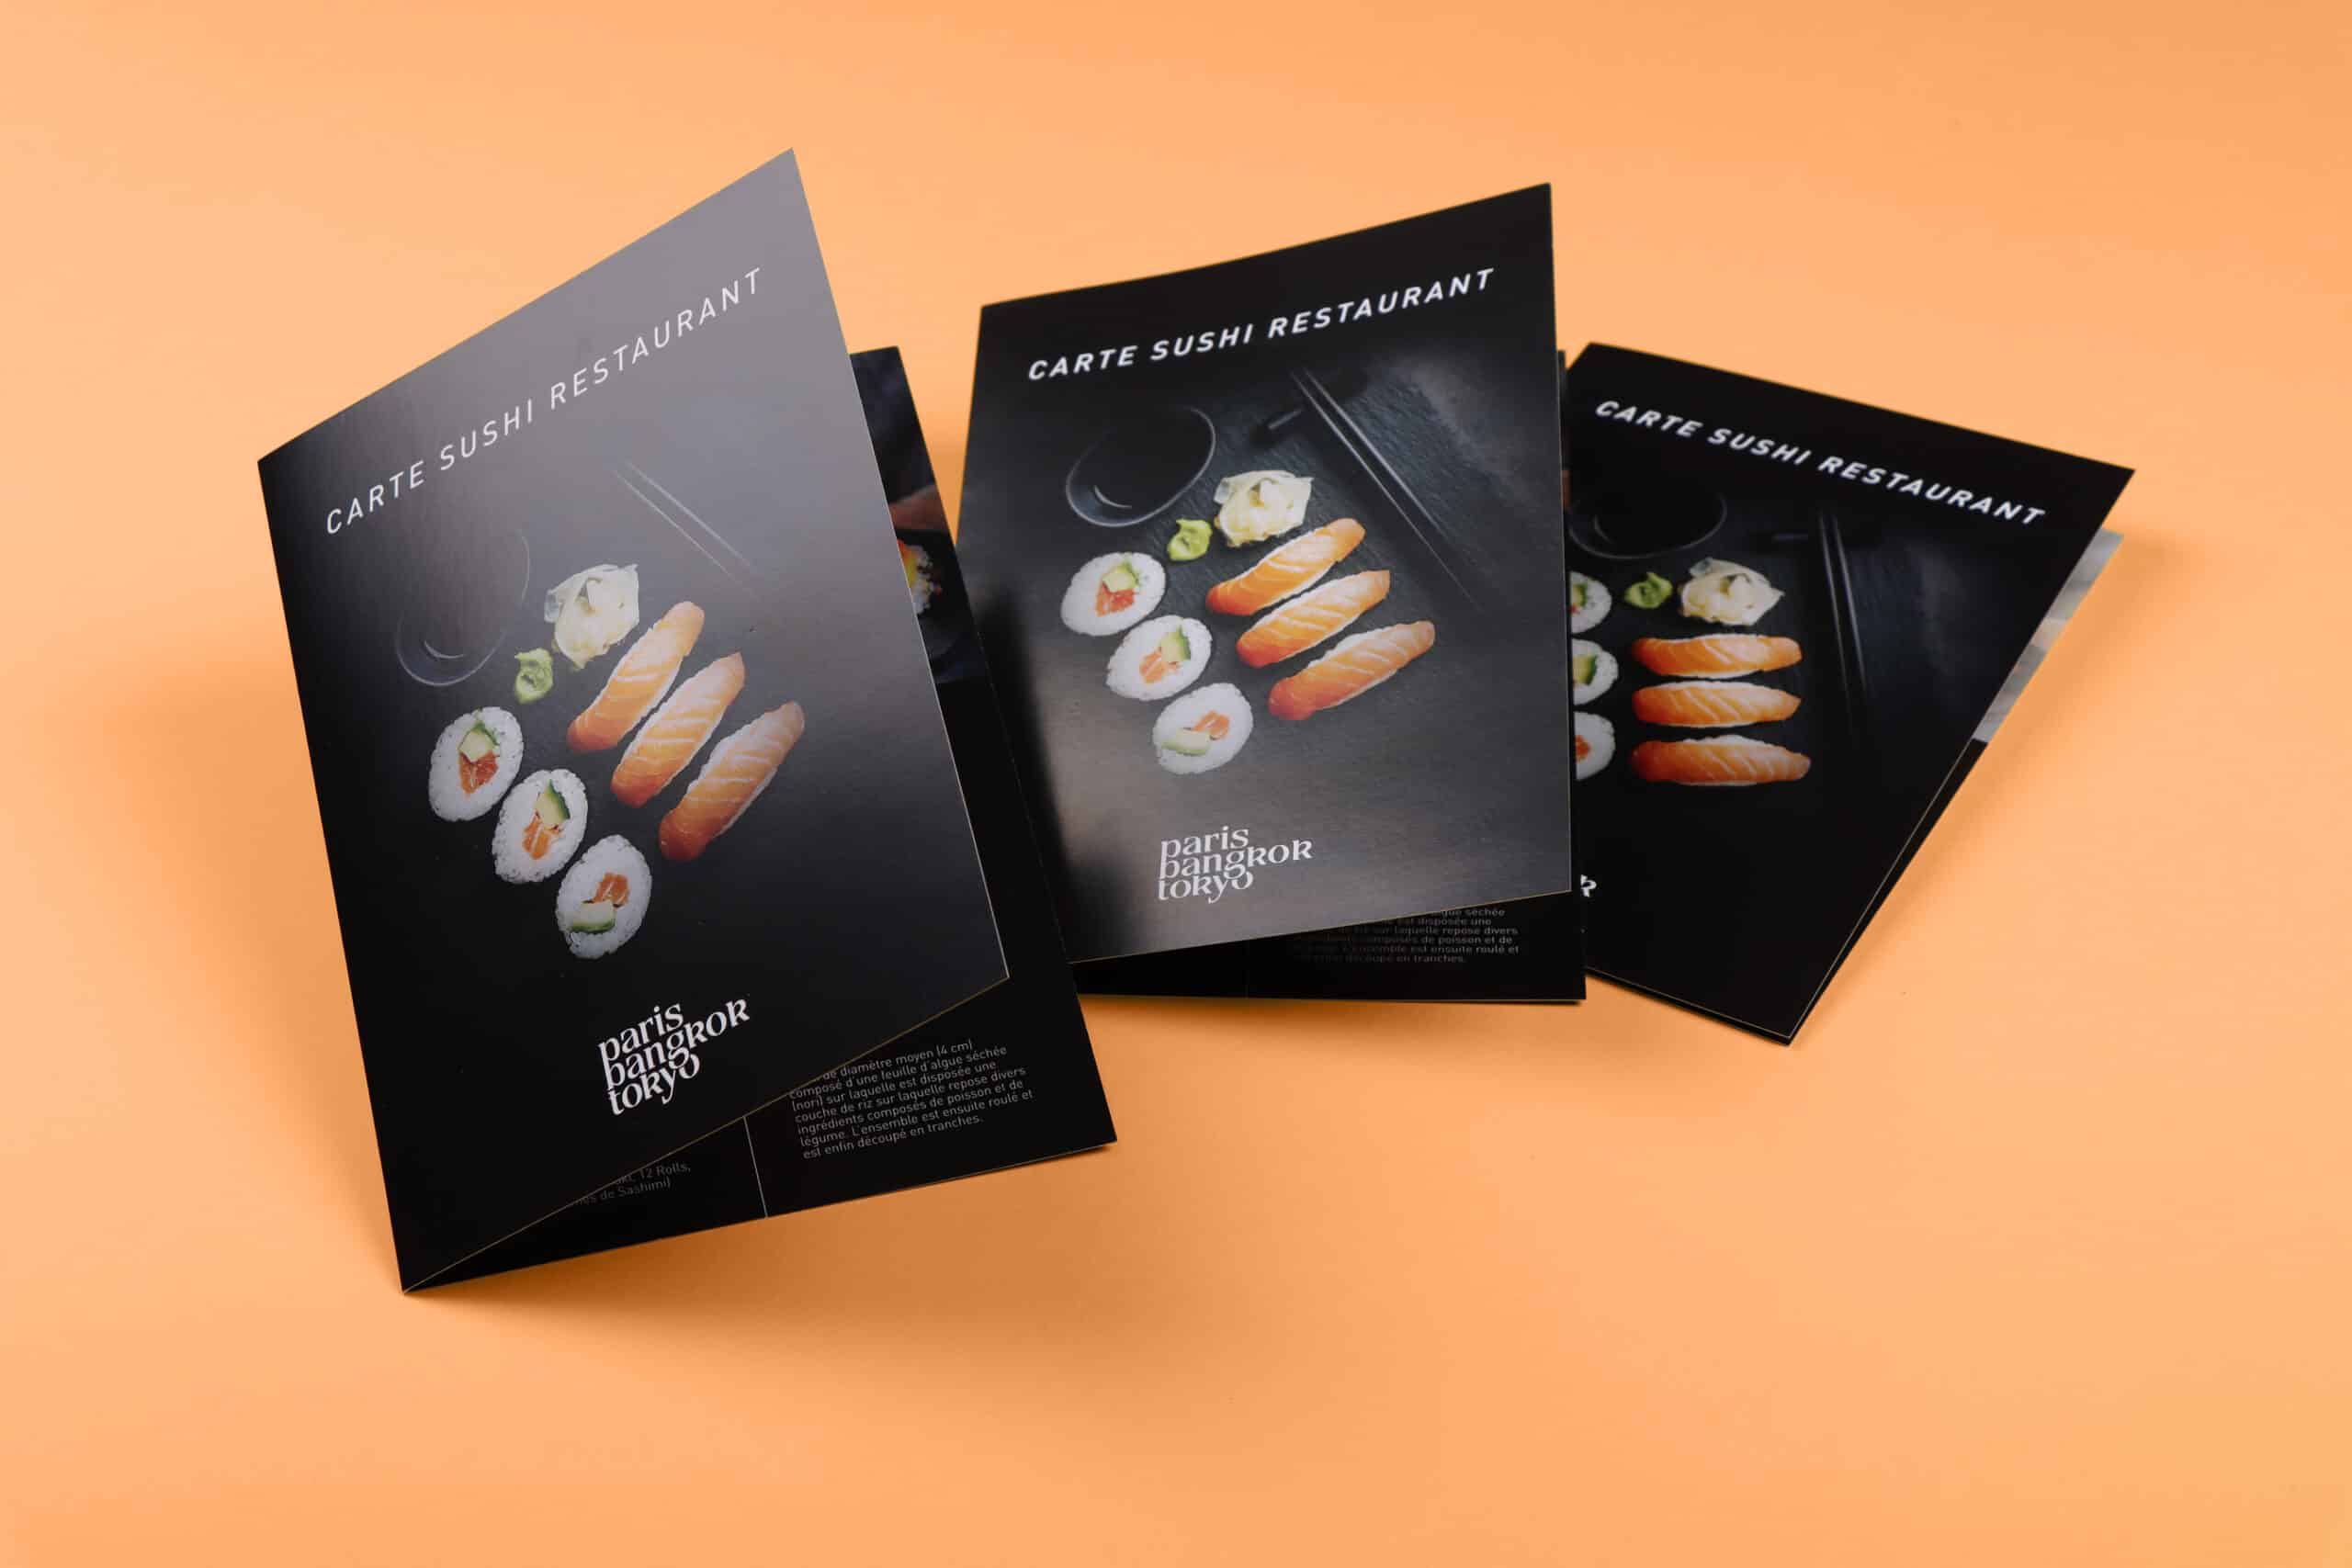 Création des cartes de sushis pour le restaurant Paris Bangkok Tokyo à Bulle